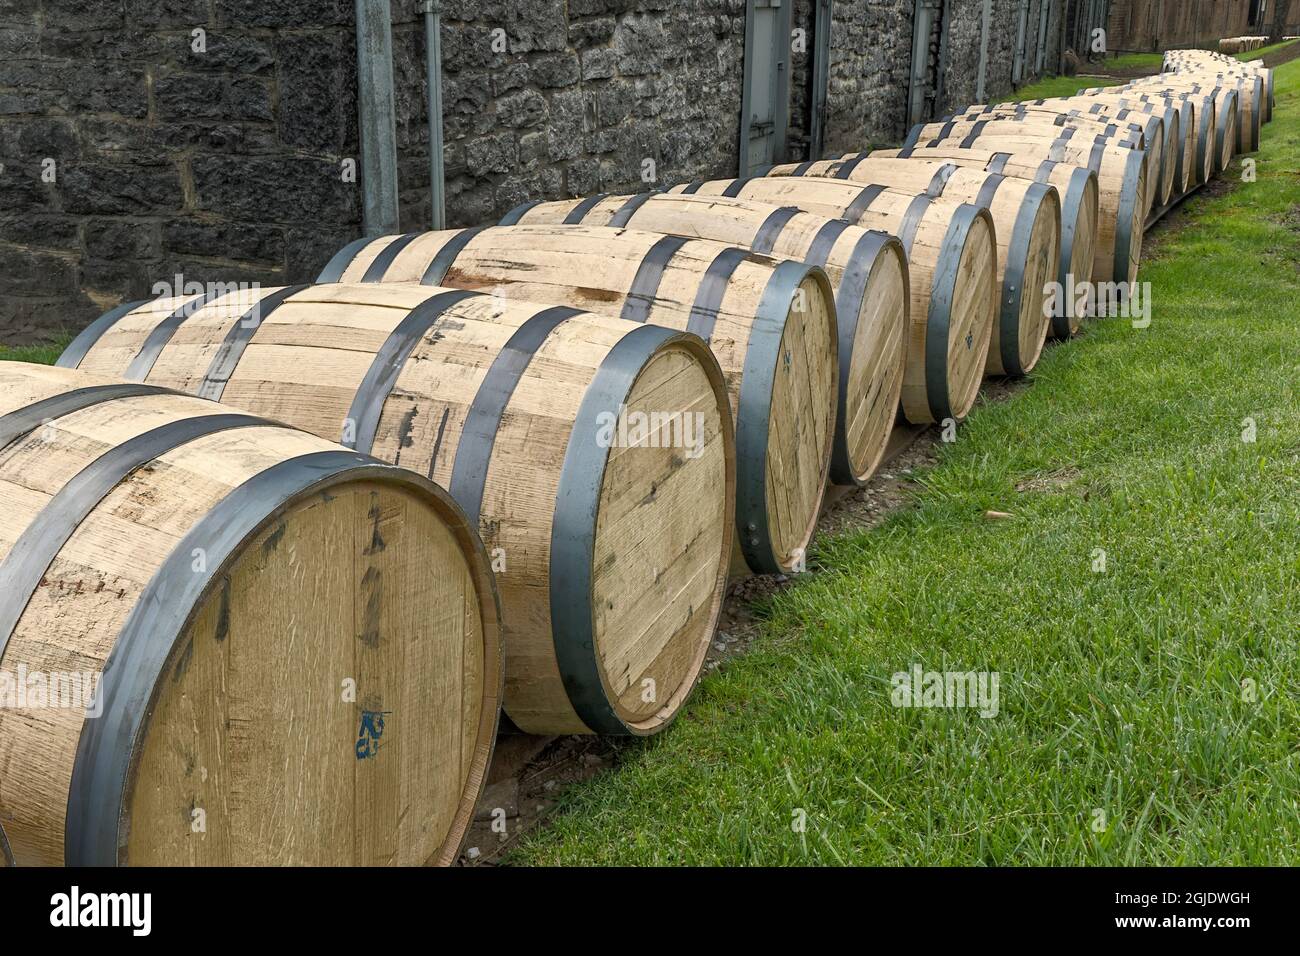 Ligne de barils de bourbon, distillerie Woodford Reserve, Versailles, Kentucky. (Usage éditorial uniquement) Banque D'Images